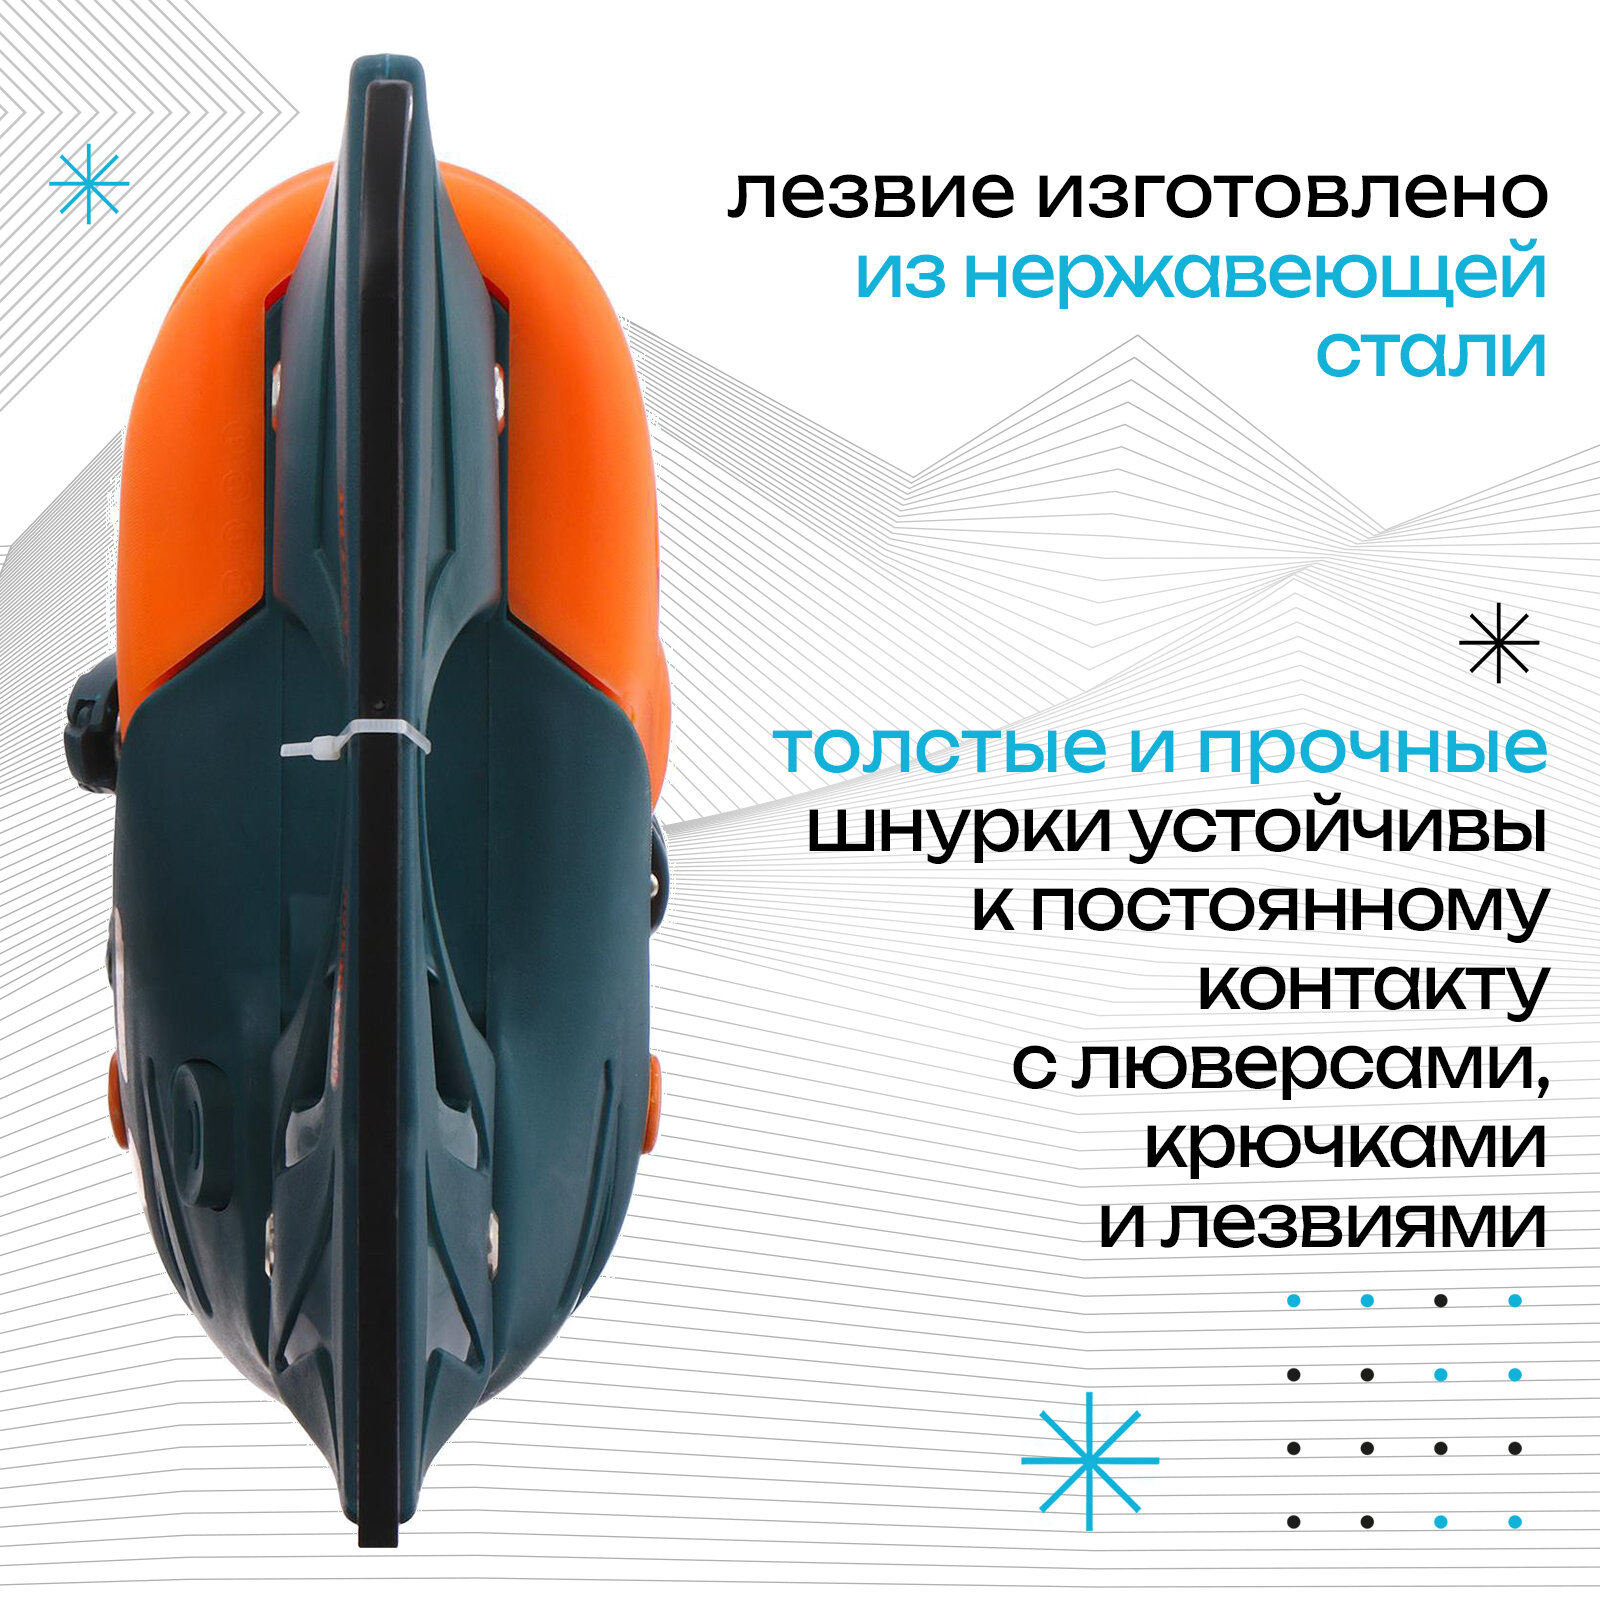 Коньки ледовые детские раздвижные «Космос» 223E, текстиль, пластик, размер 30-33, цвет оранжевый, серый